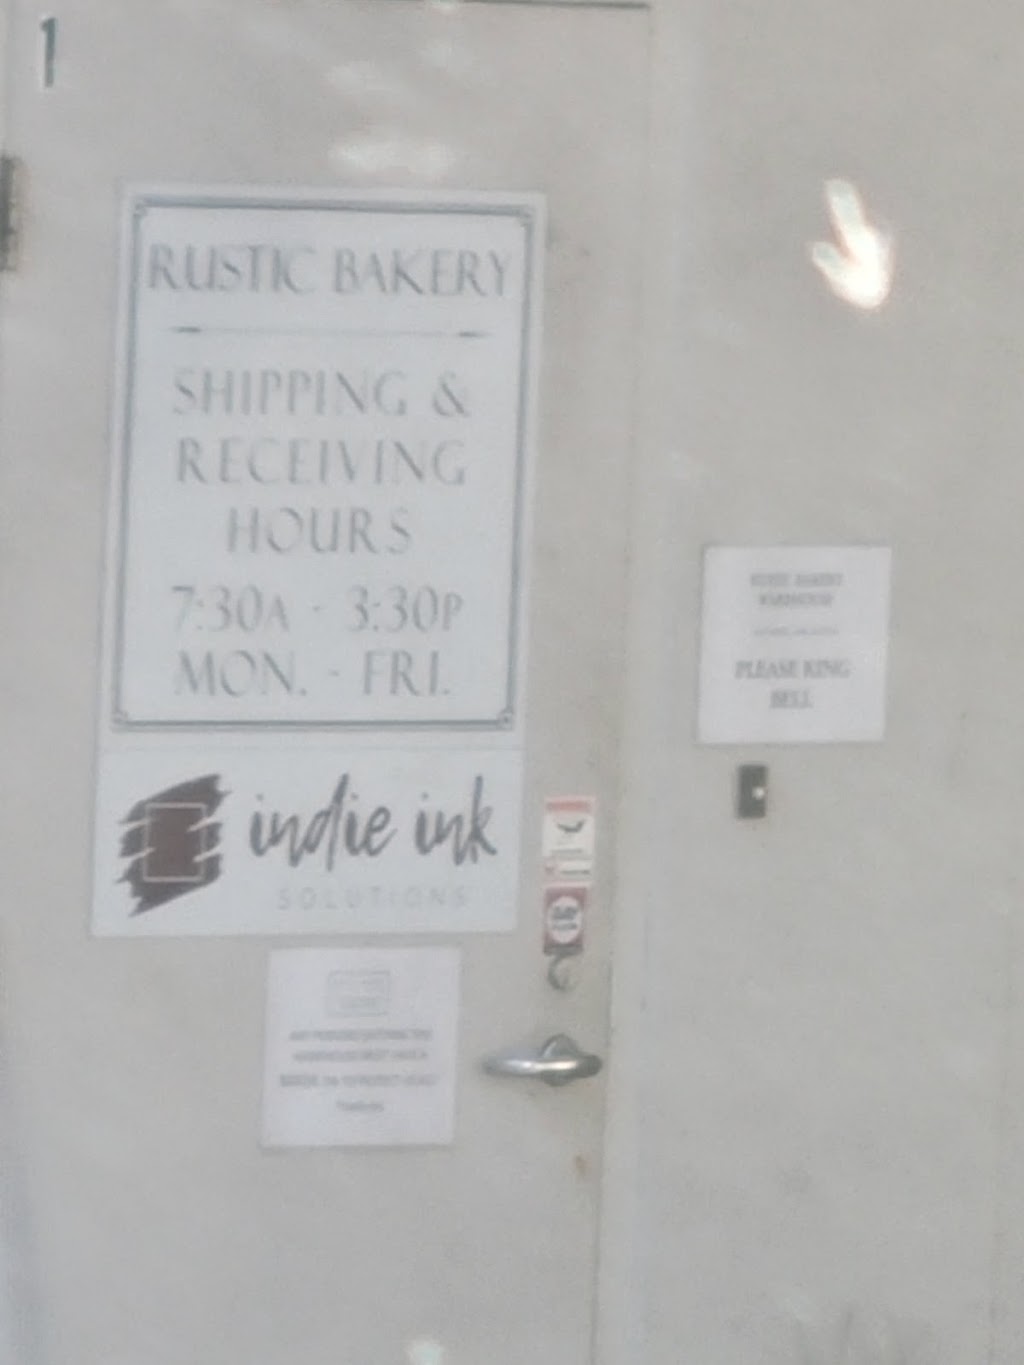 Rustic Bakery | 1460 Cader Ln, Petaluma, CA 94954 | Phone: (707) 789-7400